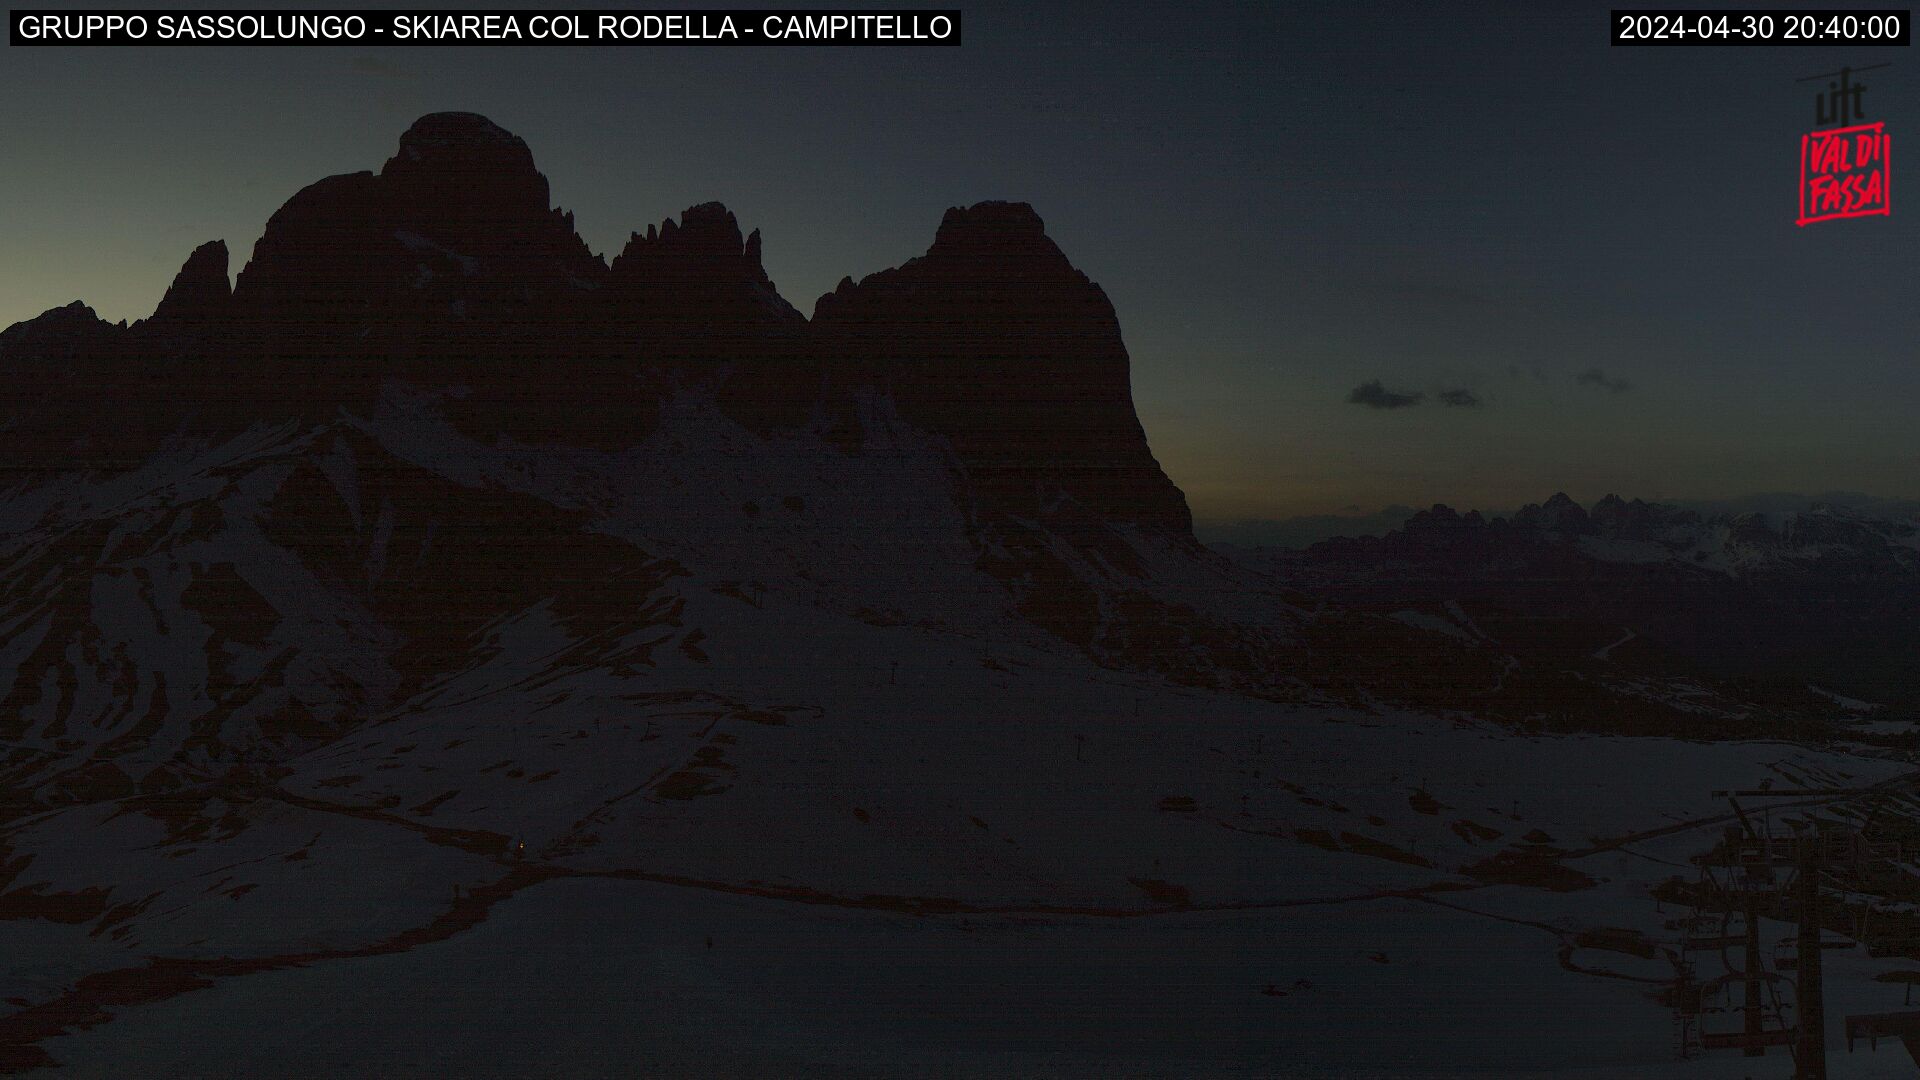 Gruppo Sassolungo - skiarea Col Rodella - Campitello